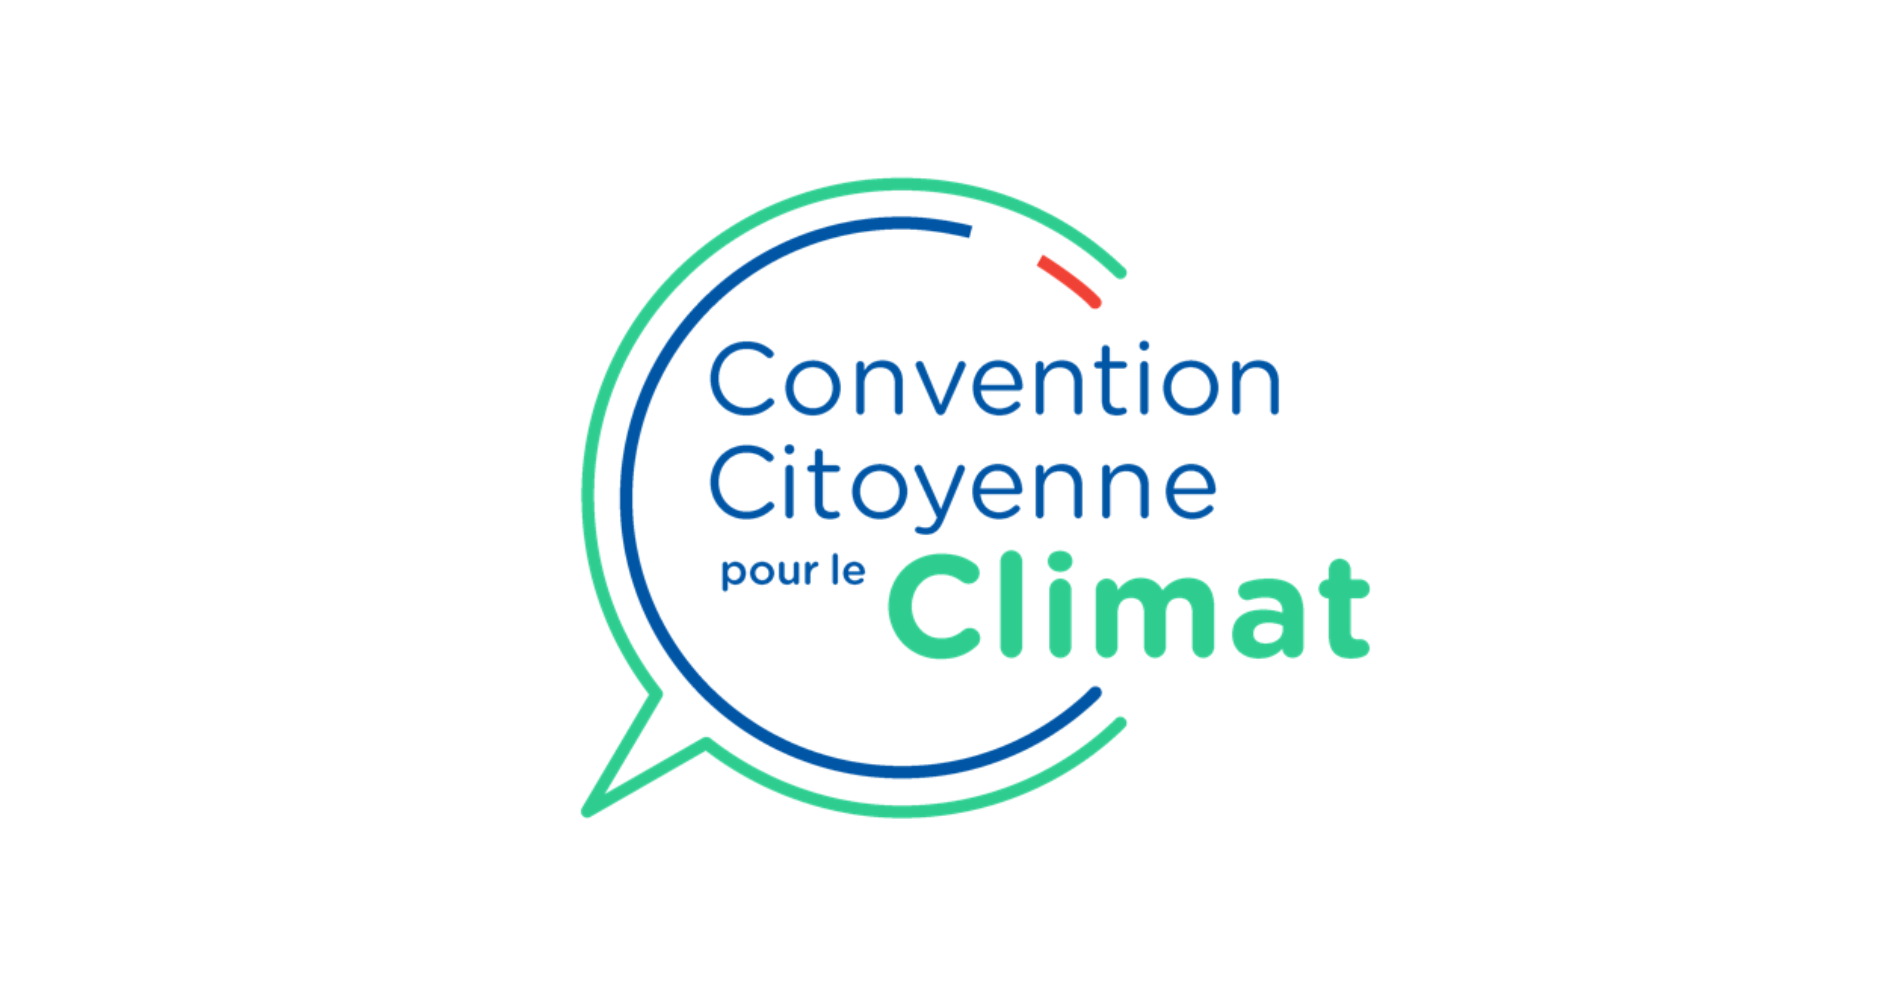 La convention citoyenne pour le climat prise au piège du yakafautkon